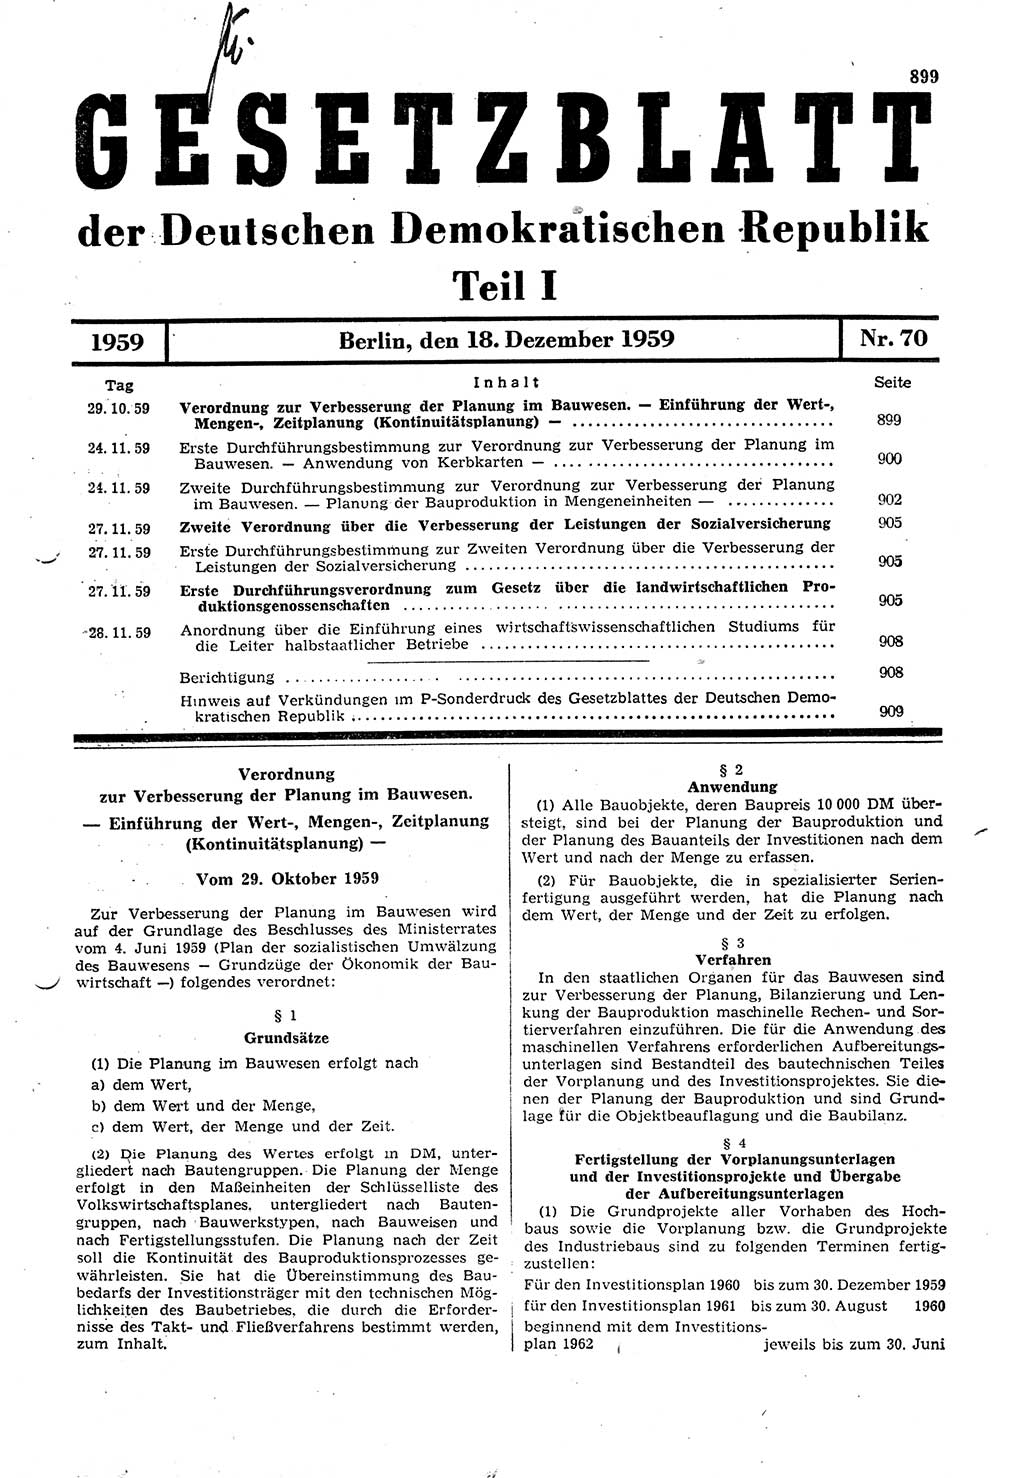 Gesetzblatt (GBl.) der Deutschen Demokratischen Republik (DDR) Teil Ⅰ 1959, Seite 899 (GBl. DDR Ⅰ 1959, S. 899)